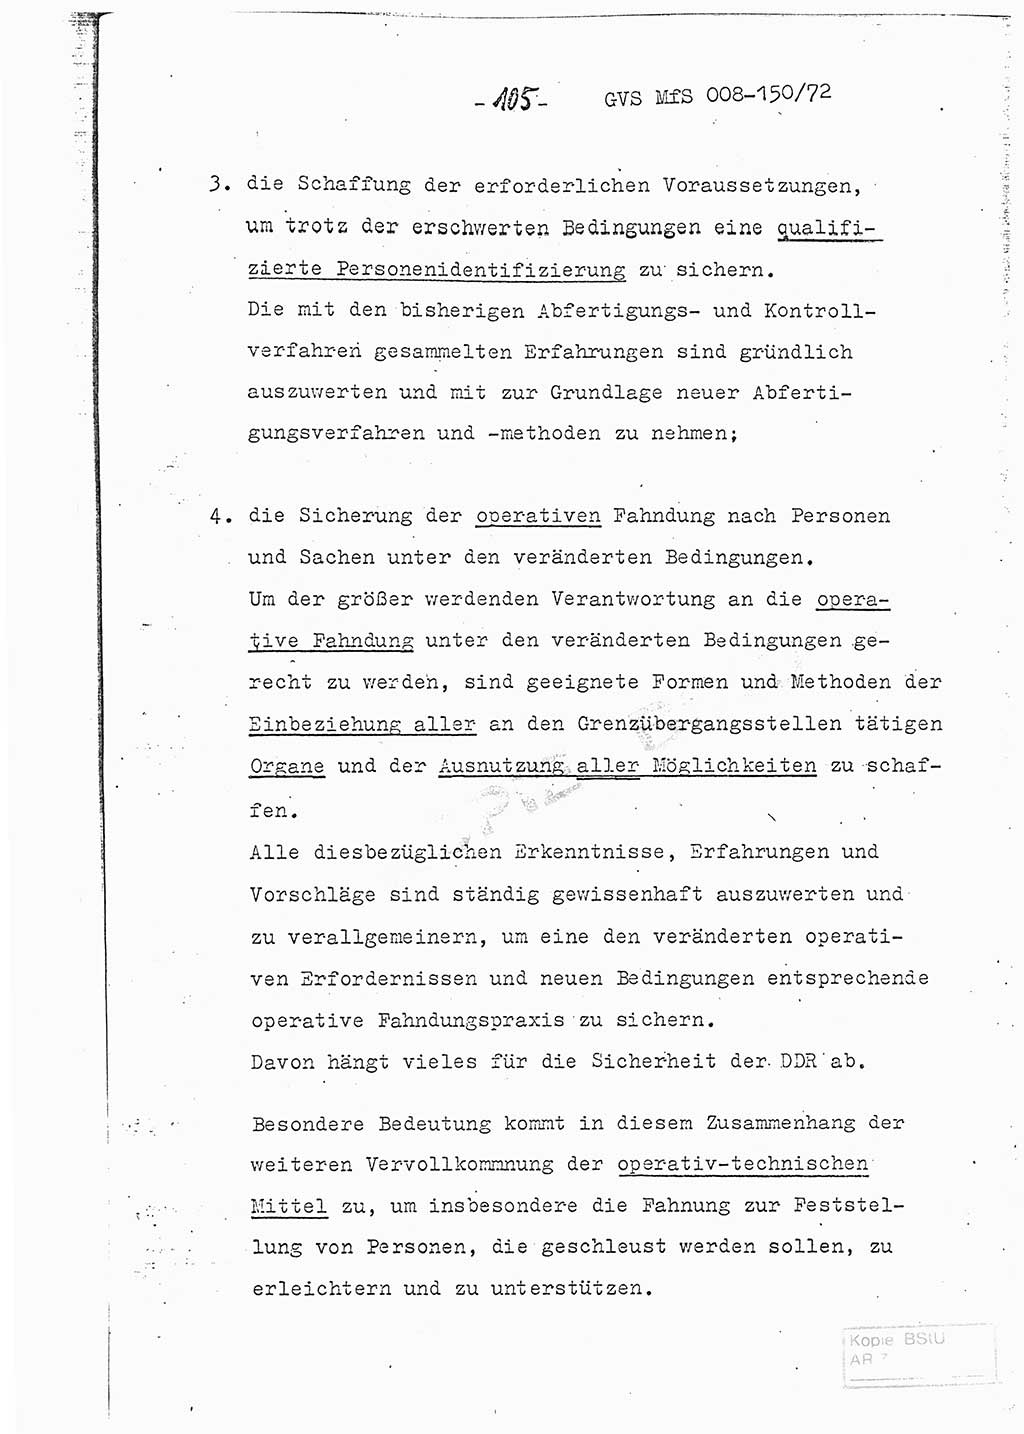 Referat (Entwurf) des Genossen Minister (Generaloberst Erich Mielke) auf der Dienstkonferenz 1972, Ministerium für Staatssicherheit (MfS) [Deutsche Demokratische Republik (DDR)], Der Minister, Geheime Verschlußsache (GVS) 008-150/72, Berlin 25.2.1972, Seite 105 (Ref. Entw. DK MfS DDR Min. GVS 008-150/72 1972, S. 105)